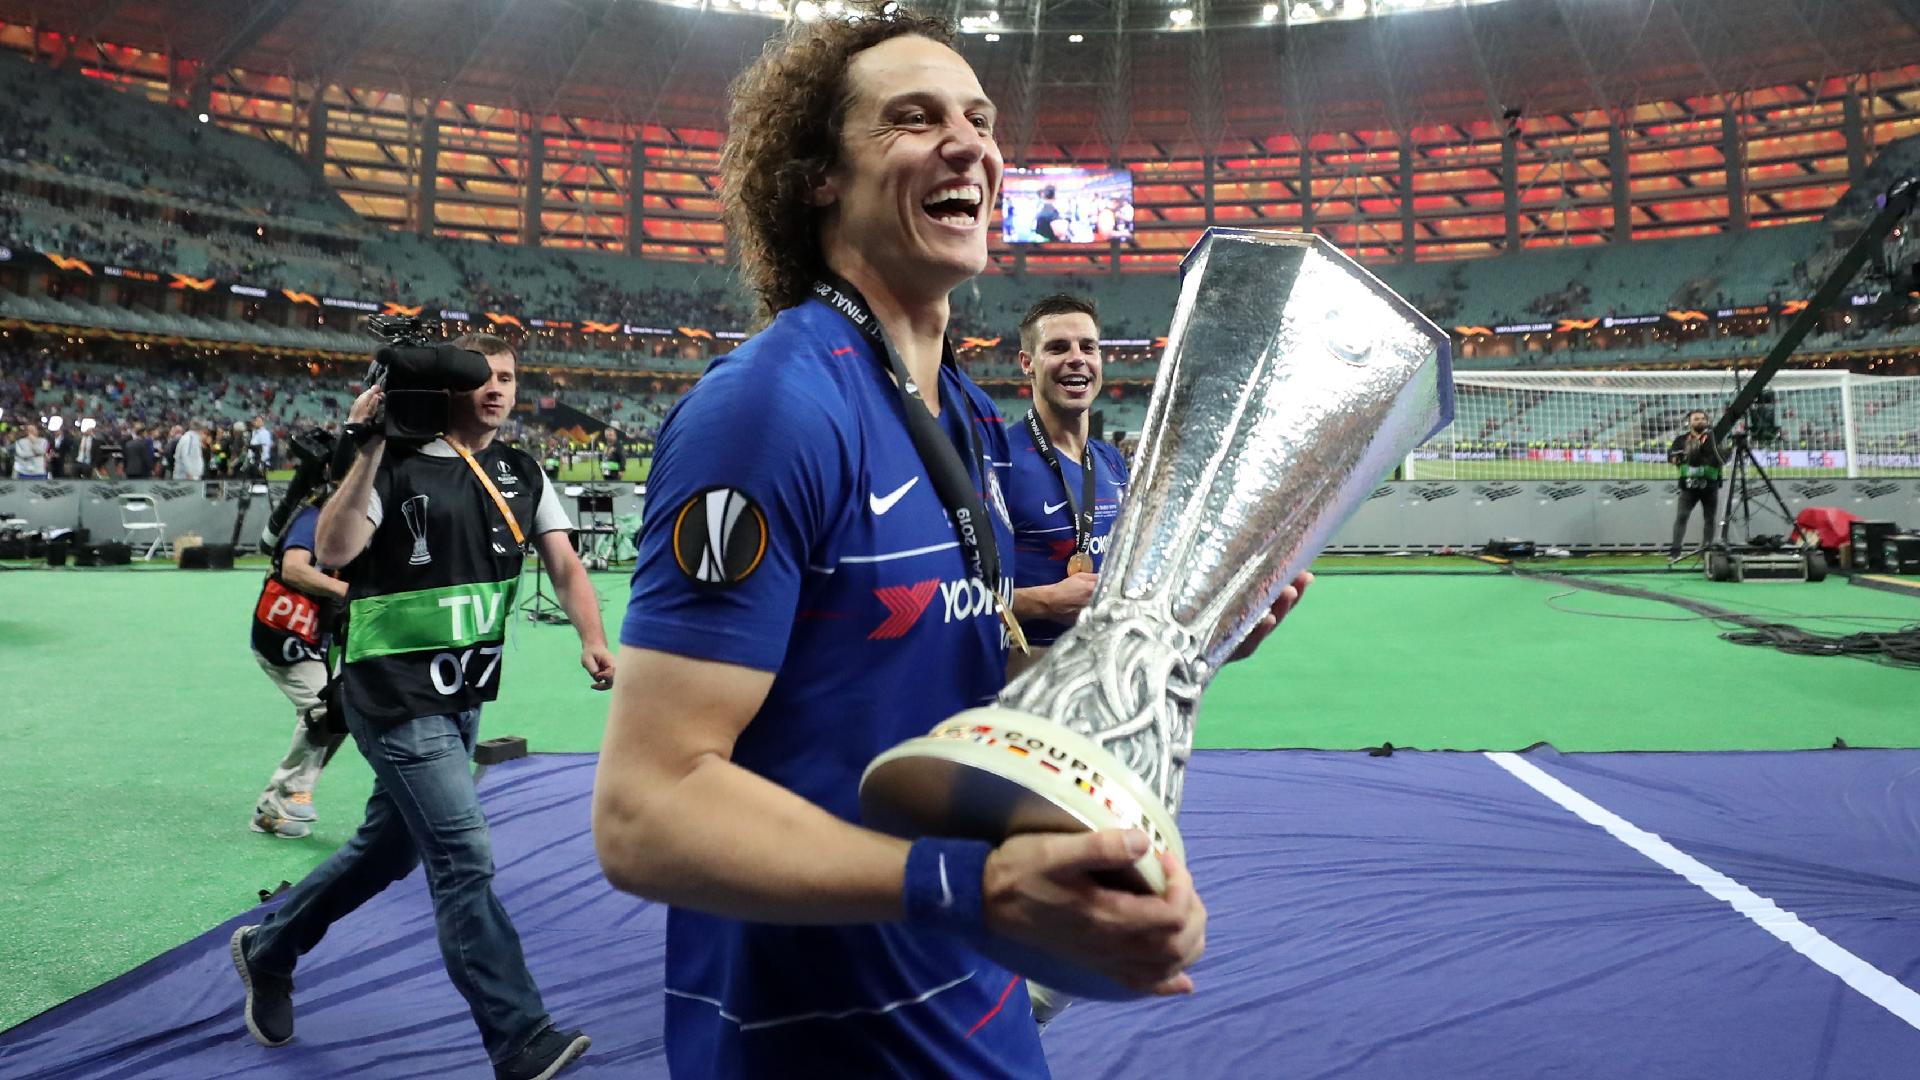 David Luiz entra para lista de vencedores da Champions e Libertadores